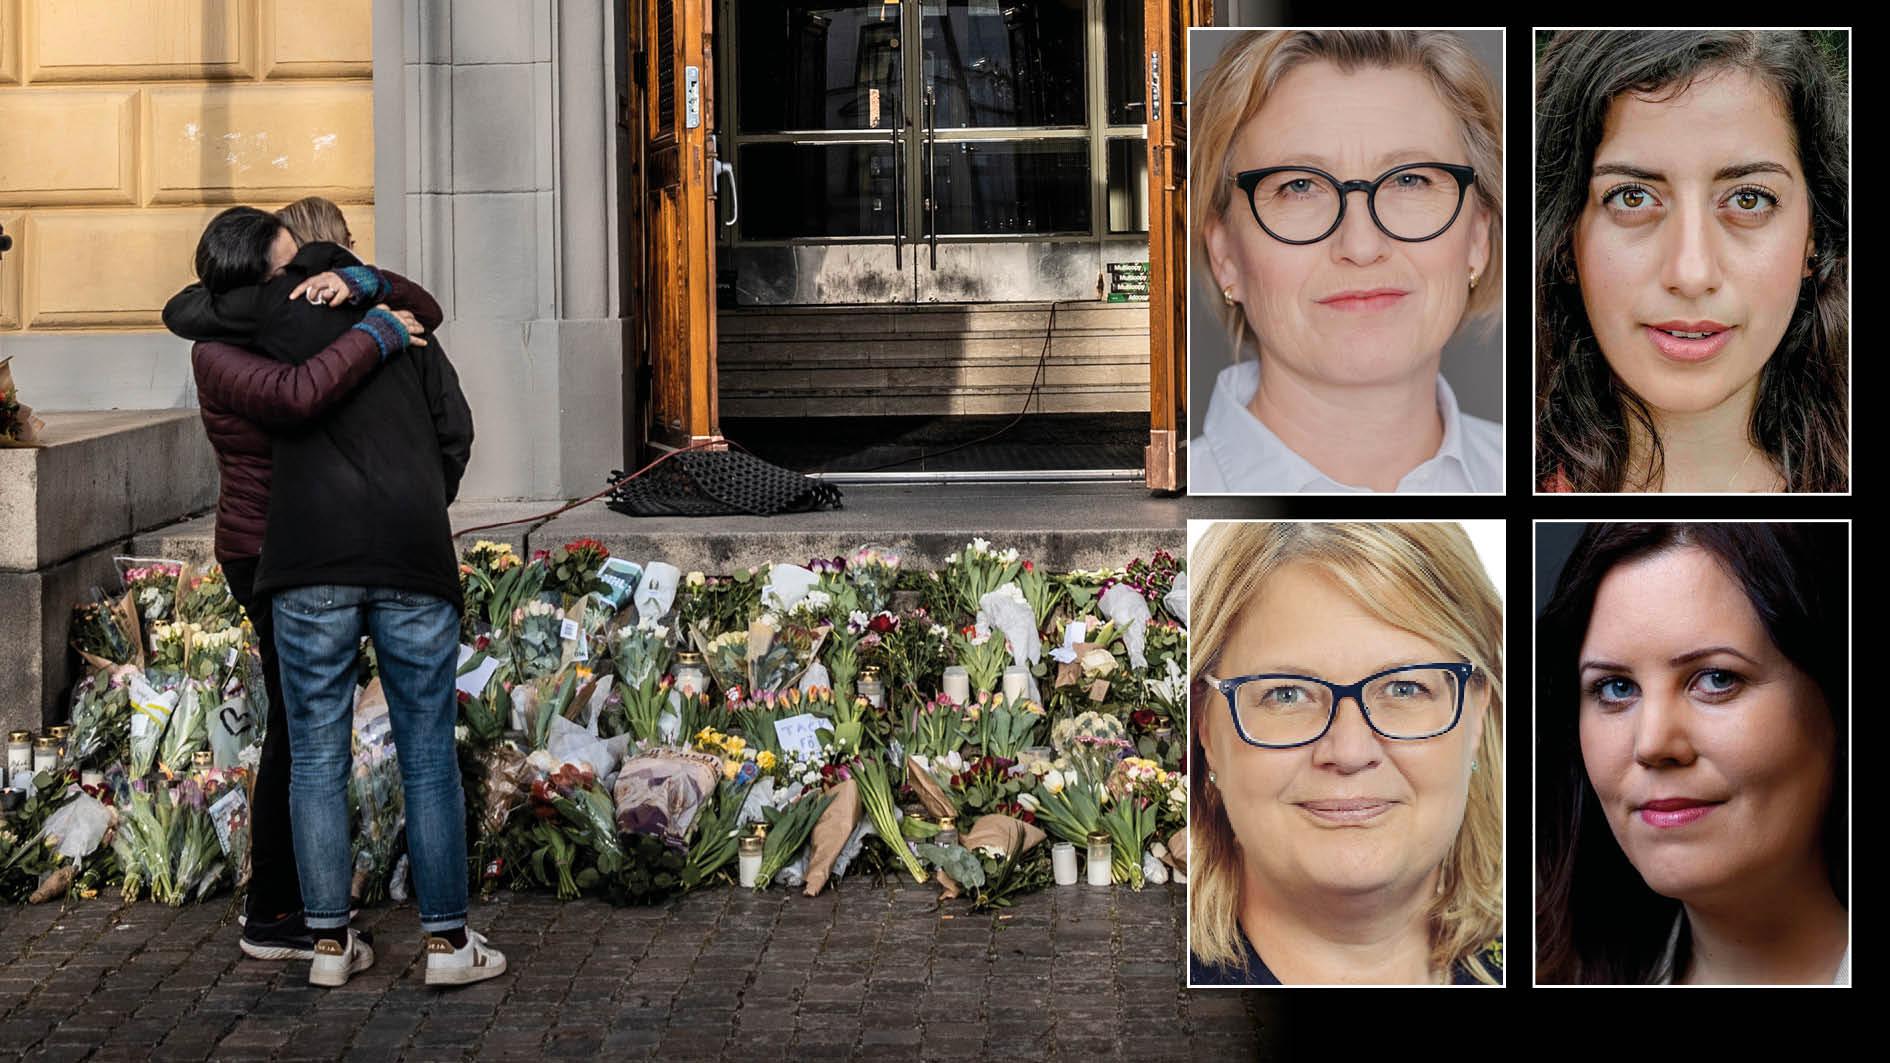 Hade mannens mord på kvinnorna i Malmö kunnat förebyggas med hårdare tag, längre straff eller fler poliser? Troligtvis inte. Och ändå är det övervägande ofta som politiker i riksdagen föreslår just det, trots att majoriteten av forskning på området säger tvärtom, skriver fyra lokala L-politiker.